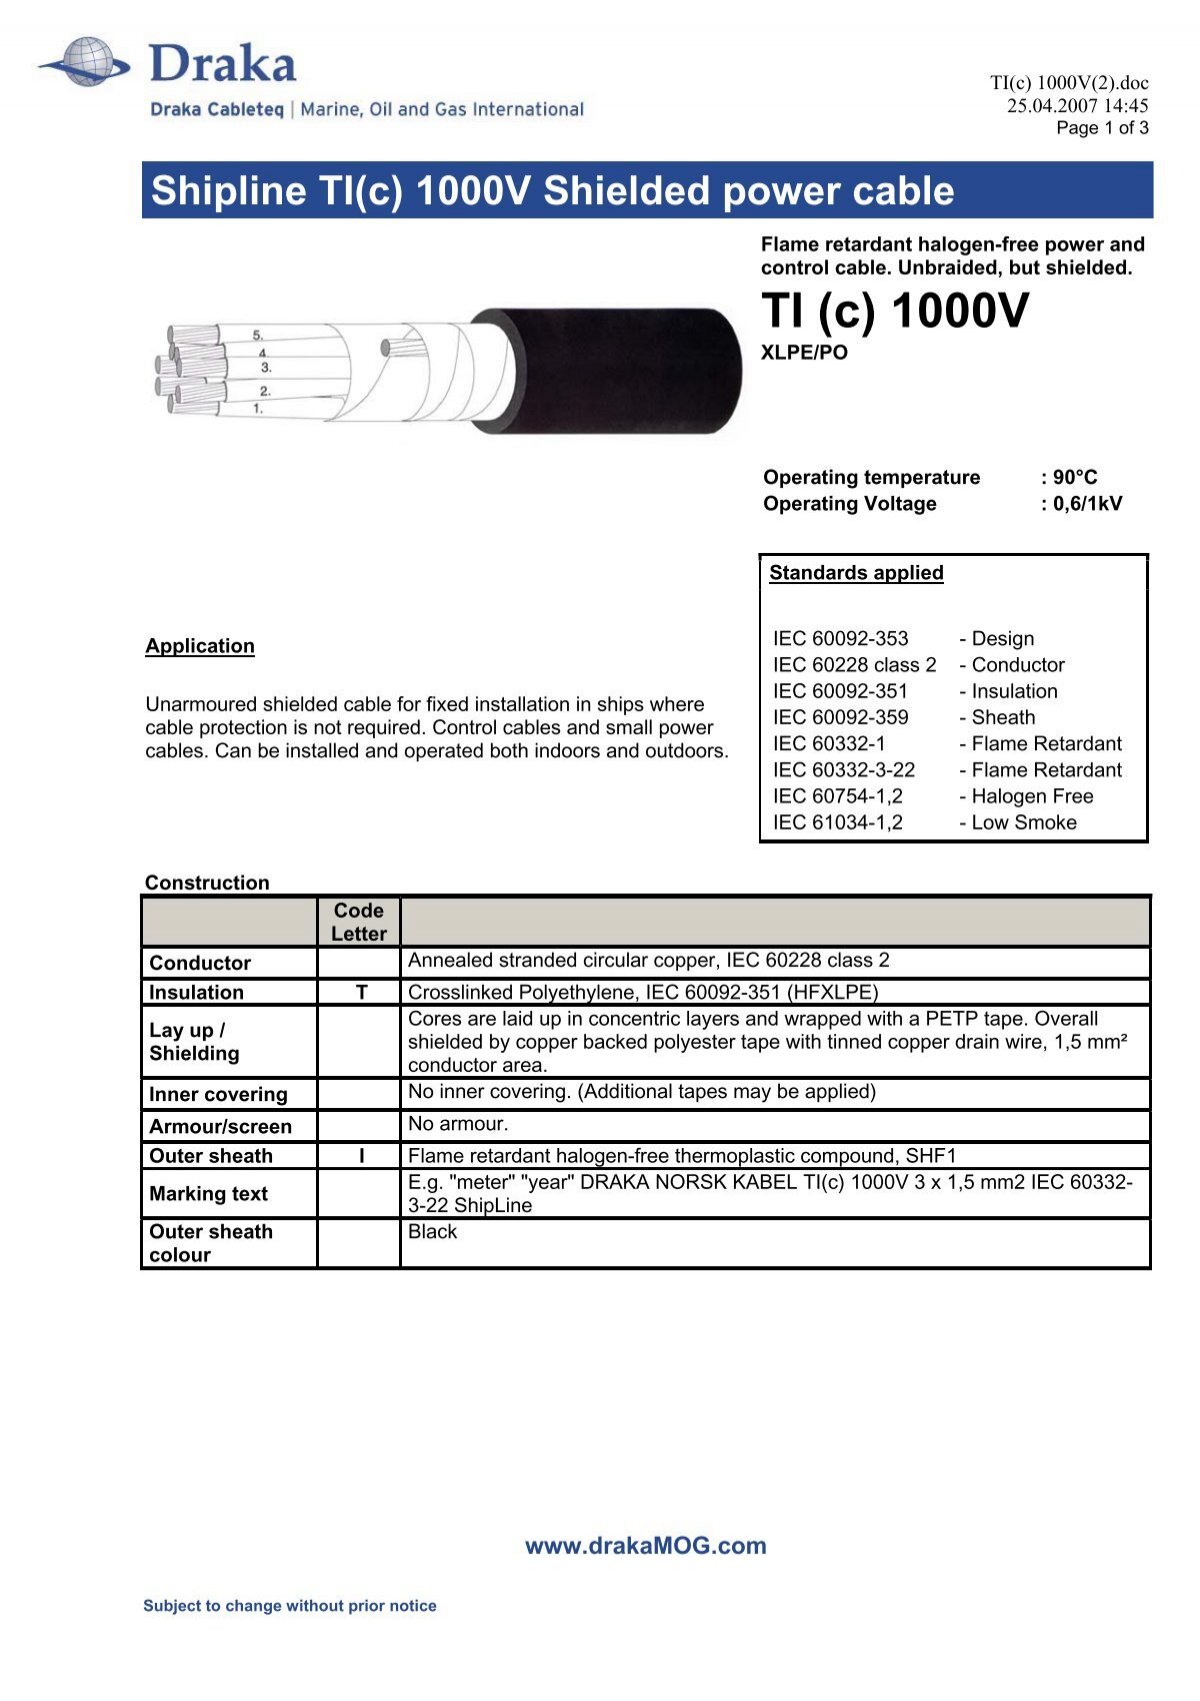 TI(c) 1000V - Draka norsk kabel